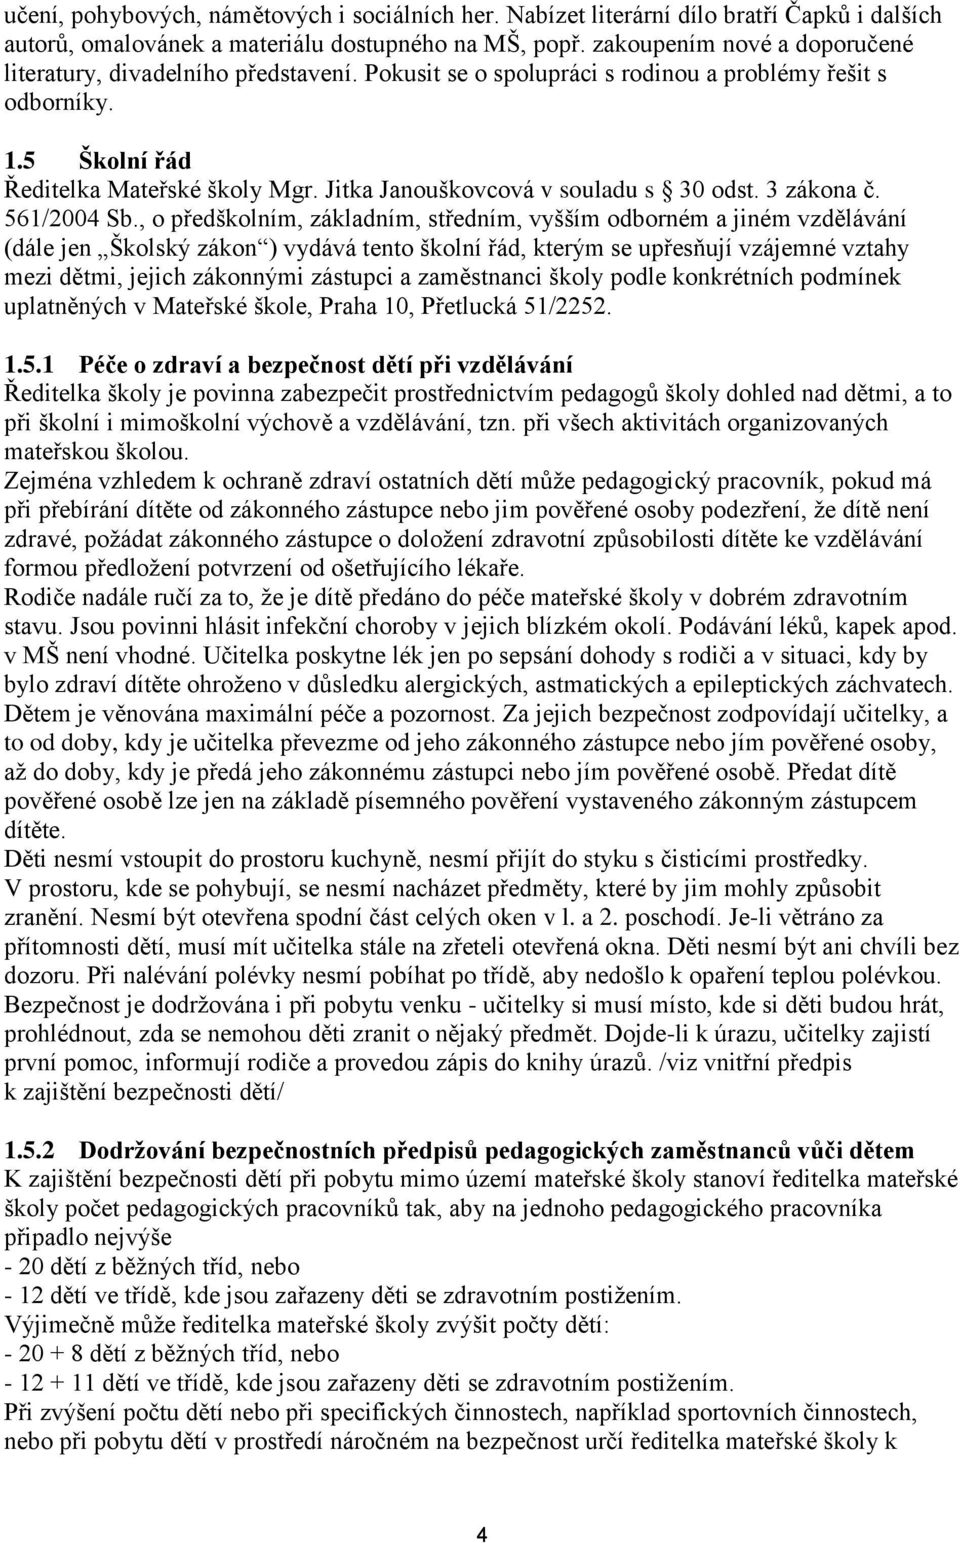 Jitka Janouškovcová v souladu s 30 odst. 3 zákona č. 561/2004 Sb.